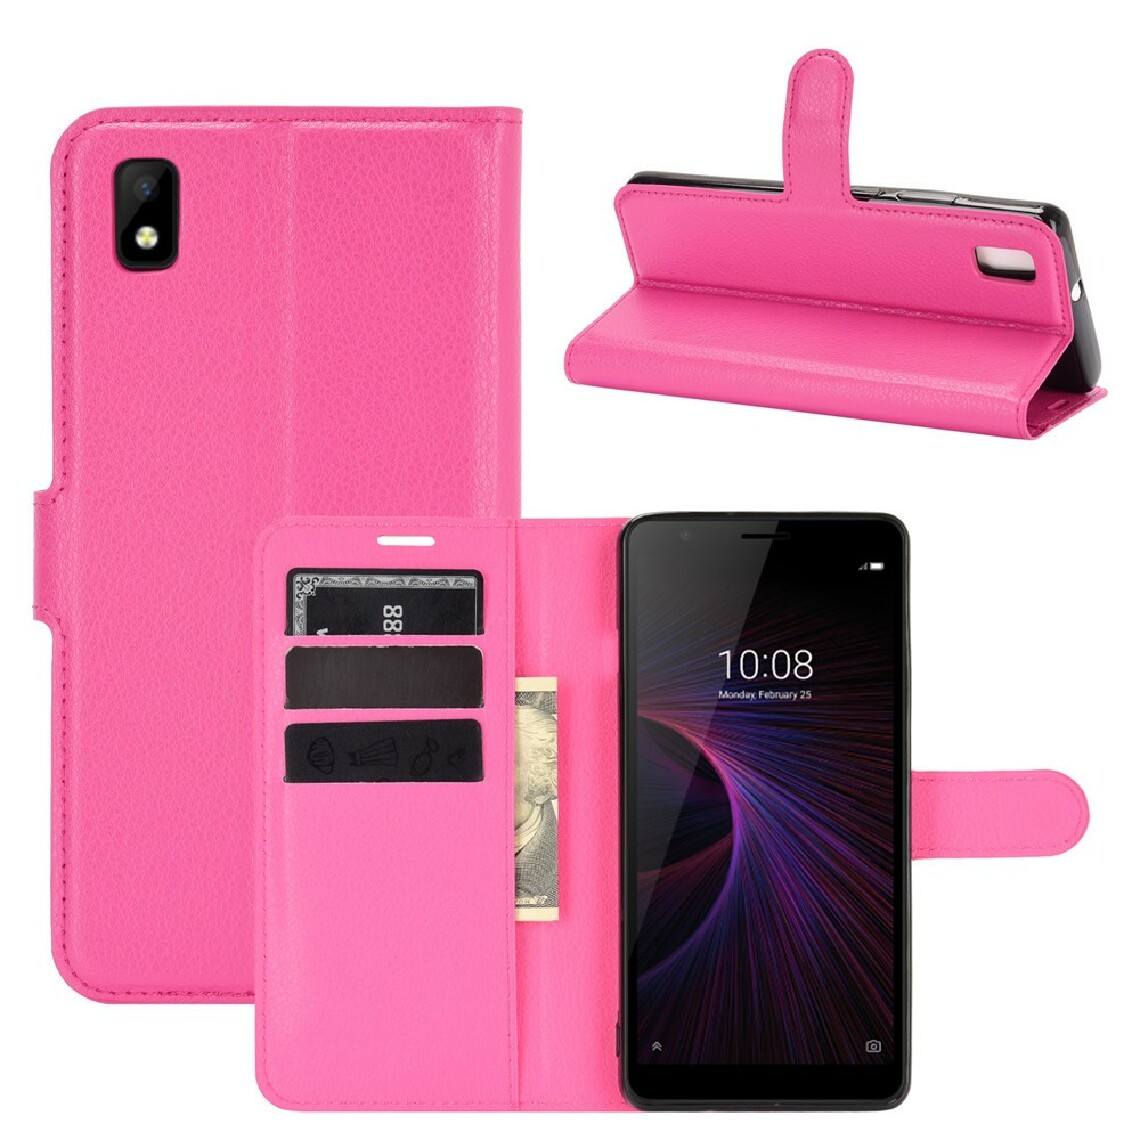 Other - Etui en PU texture de litchi avec support rose pour ZTE Blade L210 - Coque, étui smartphone